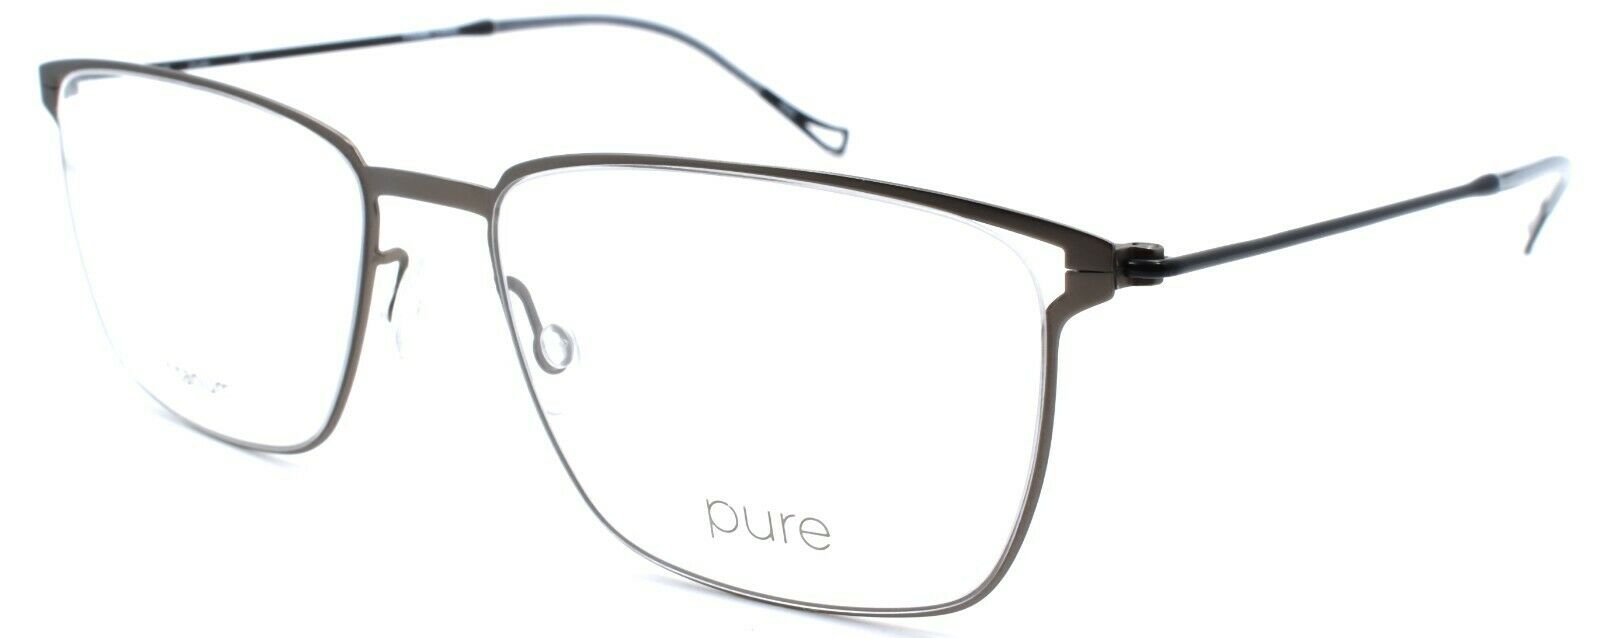 1-Marchon Airlock Pure P-4004 035 Men's Eyeglasses Titanium 54-17-145 Gunmetal-886895473118-IKSpecs